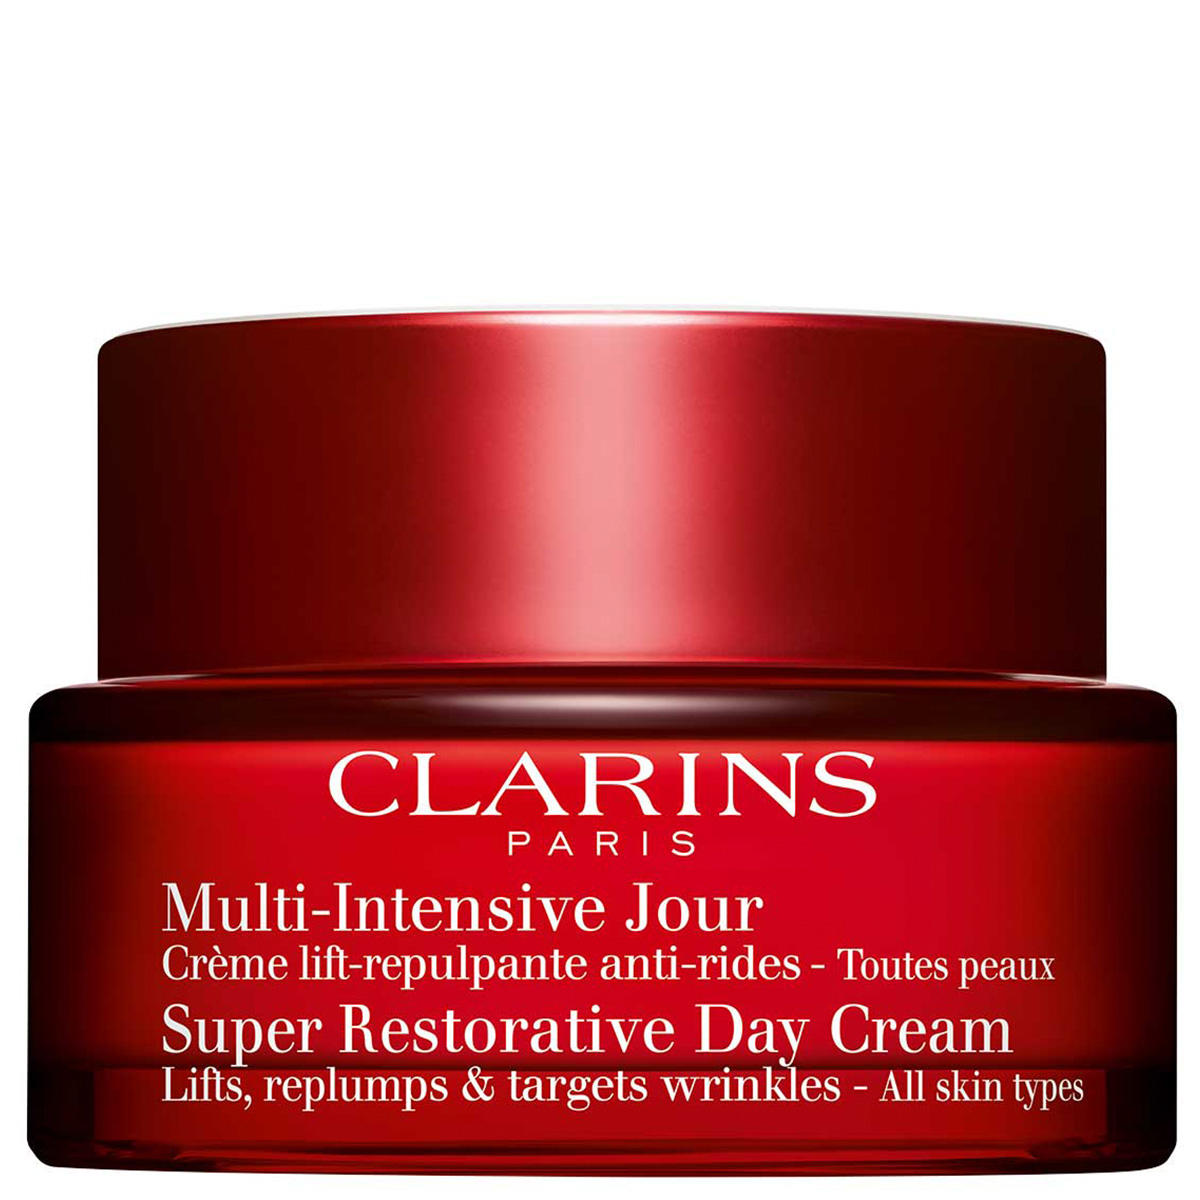 CLARINS Multi-Intensive Jour Crème-Toutes peaux 50 ml - 1